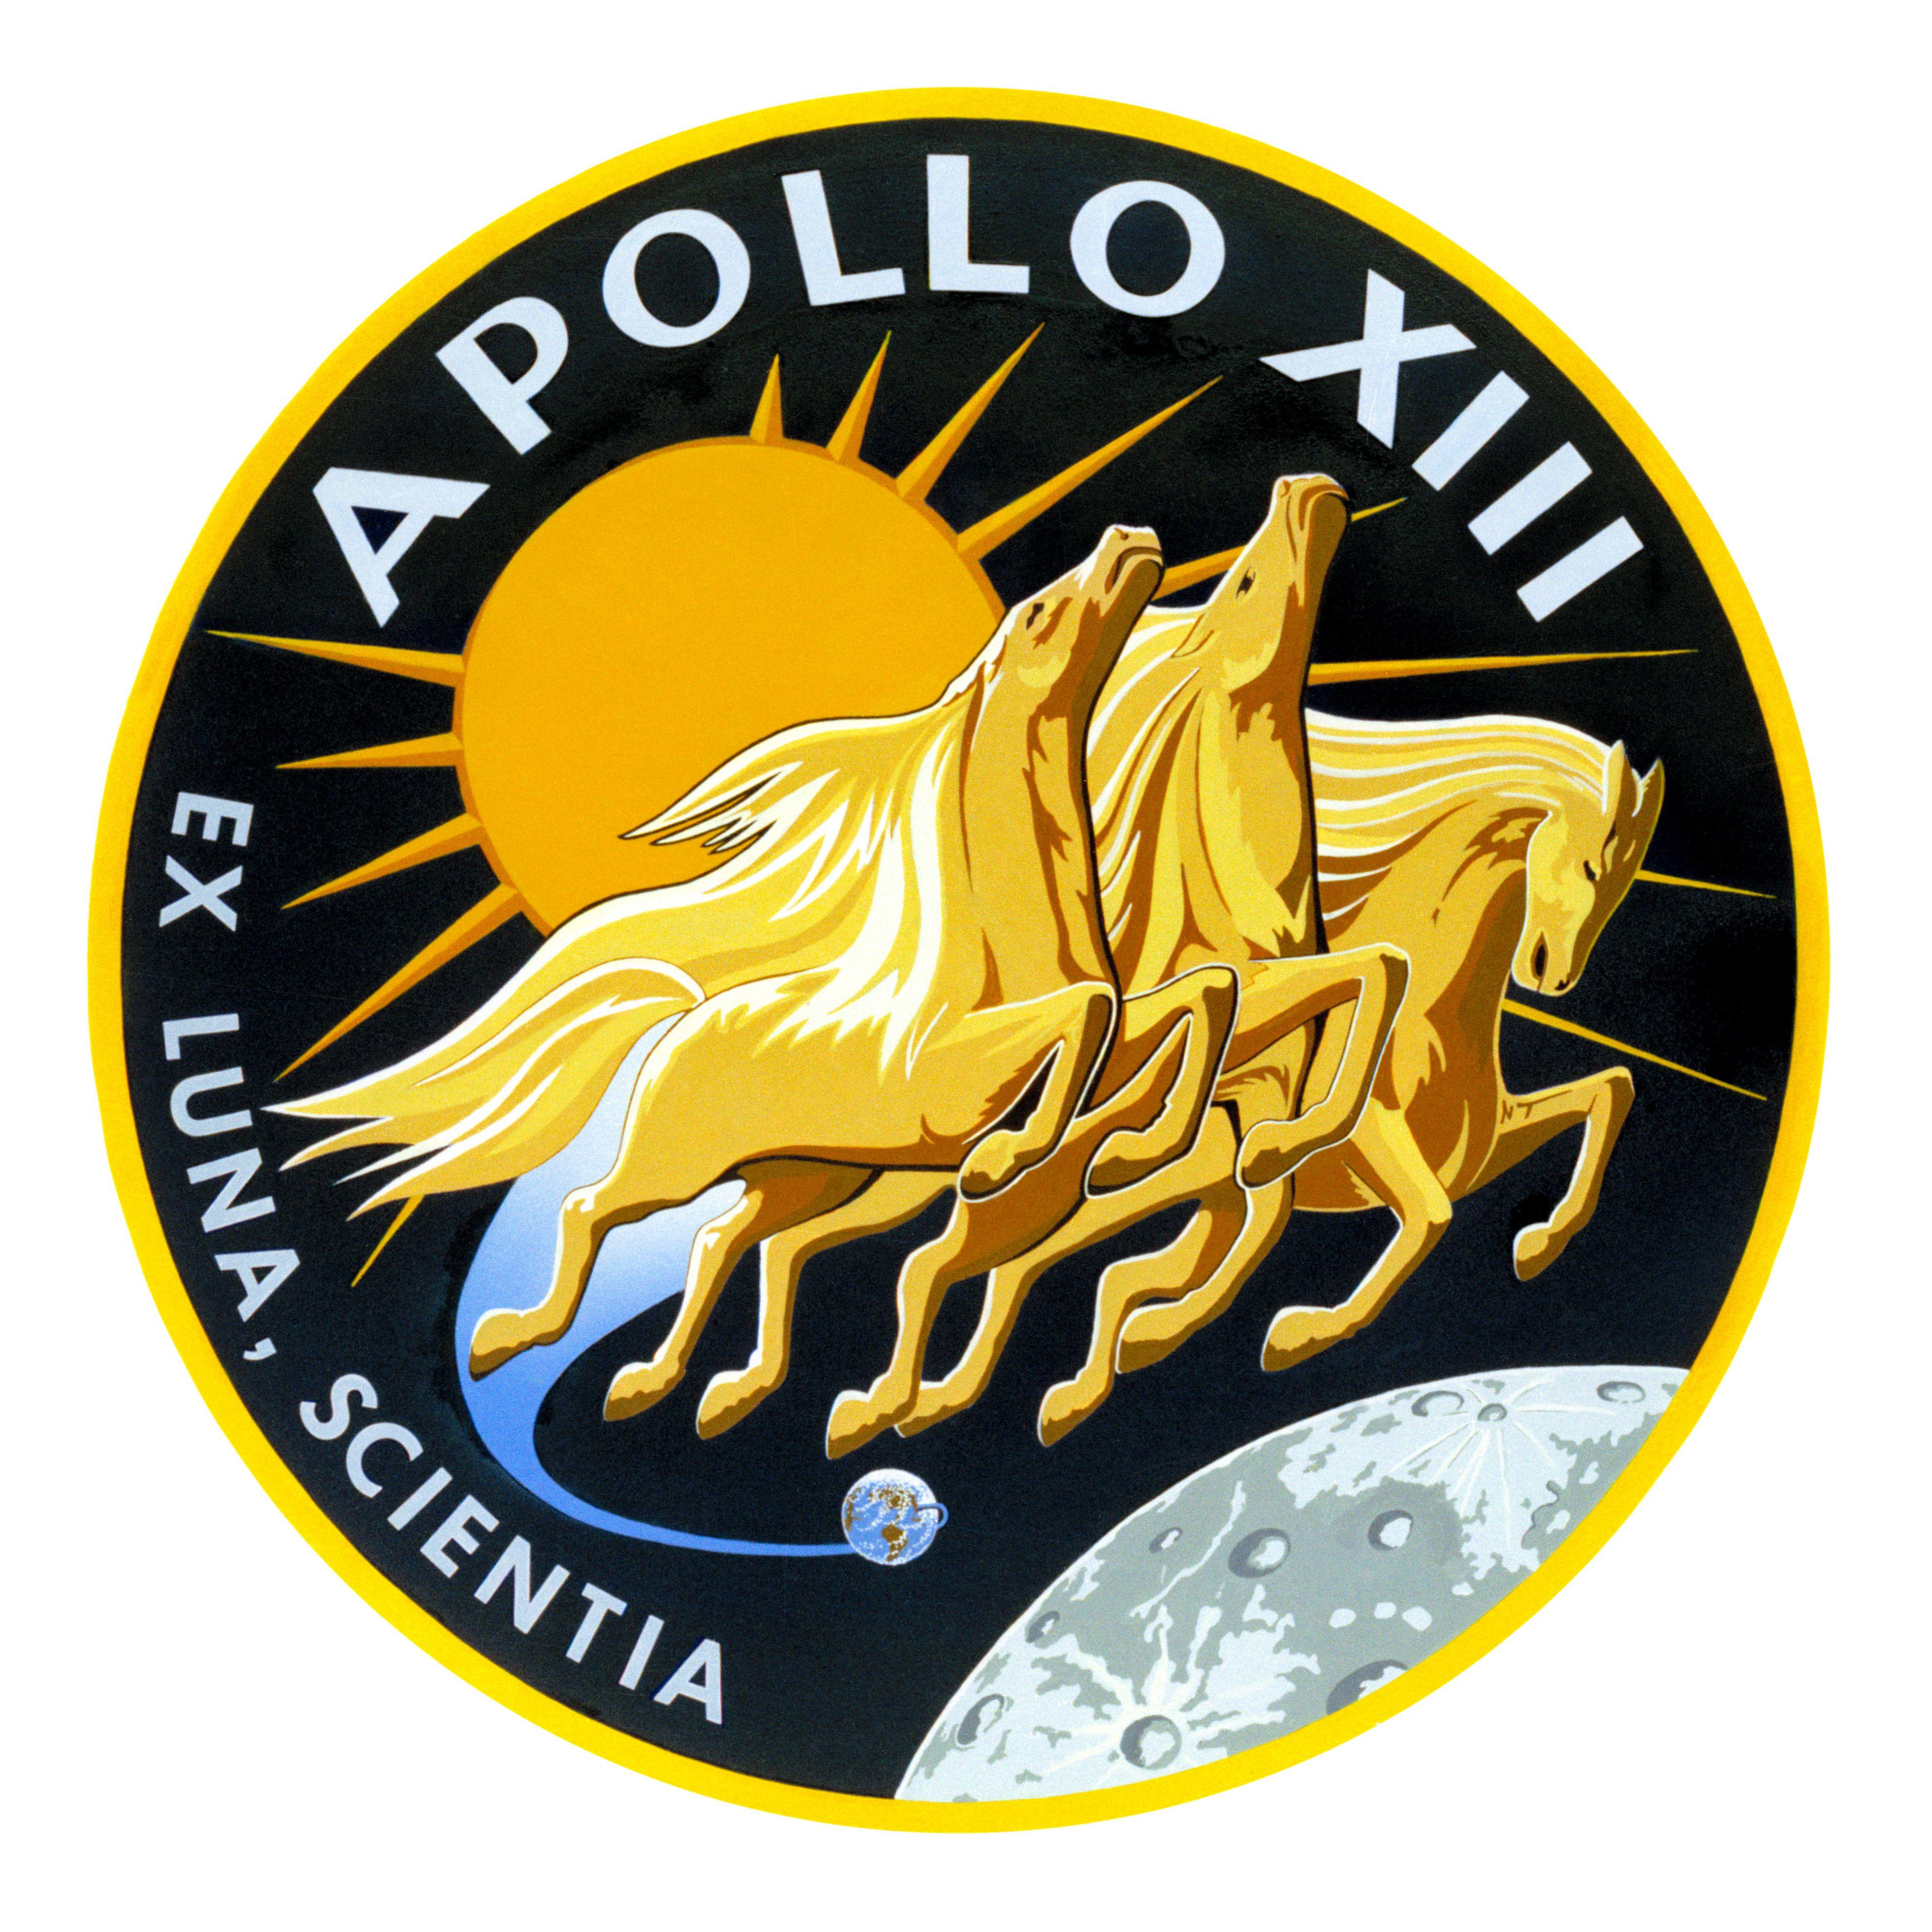 NASA Apollo Logo - Apollo 13 Emblem. NASA Image and Video Library